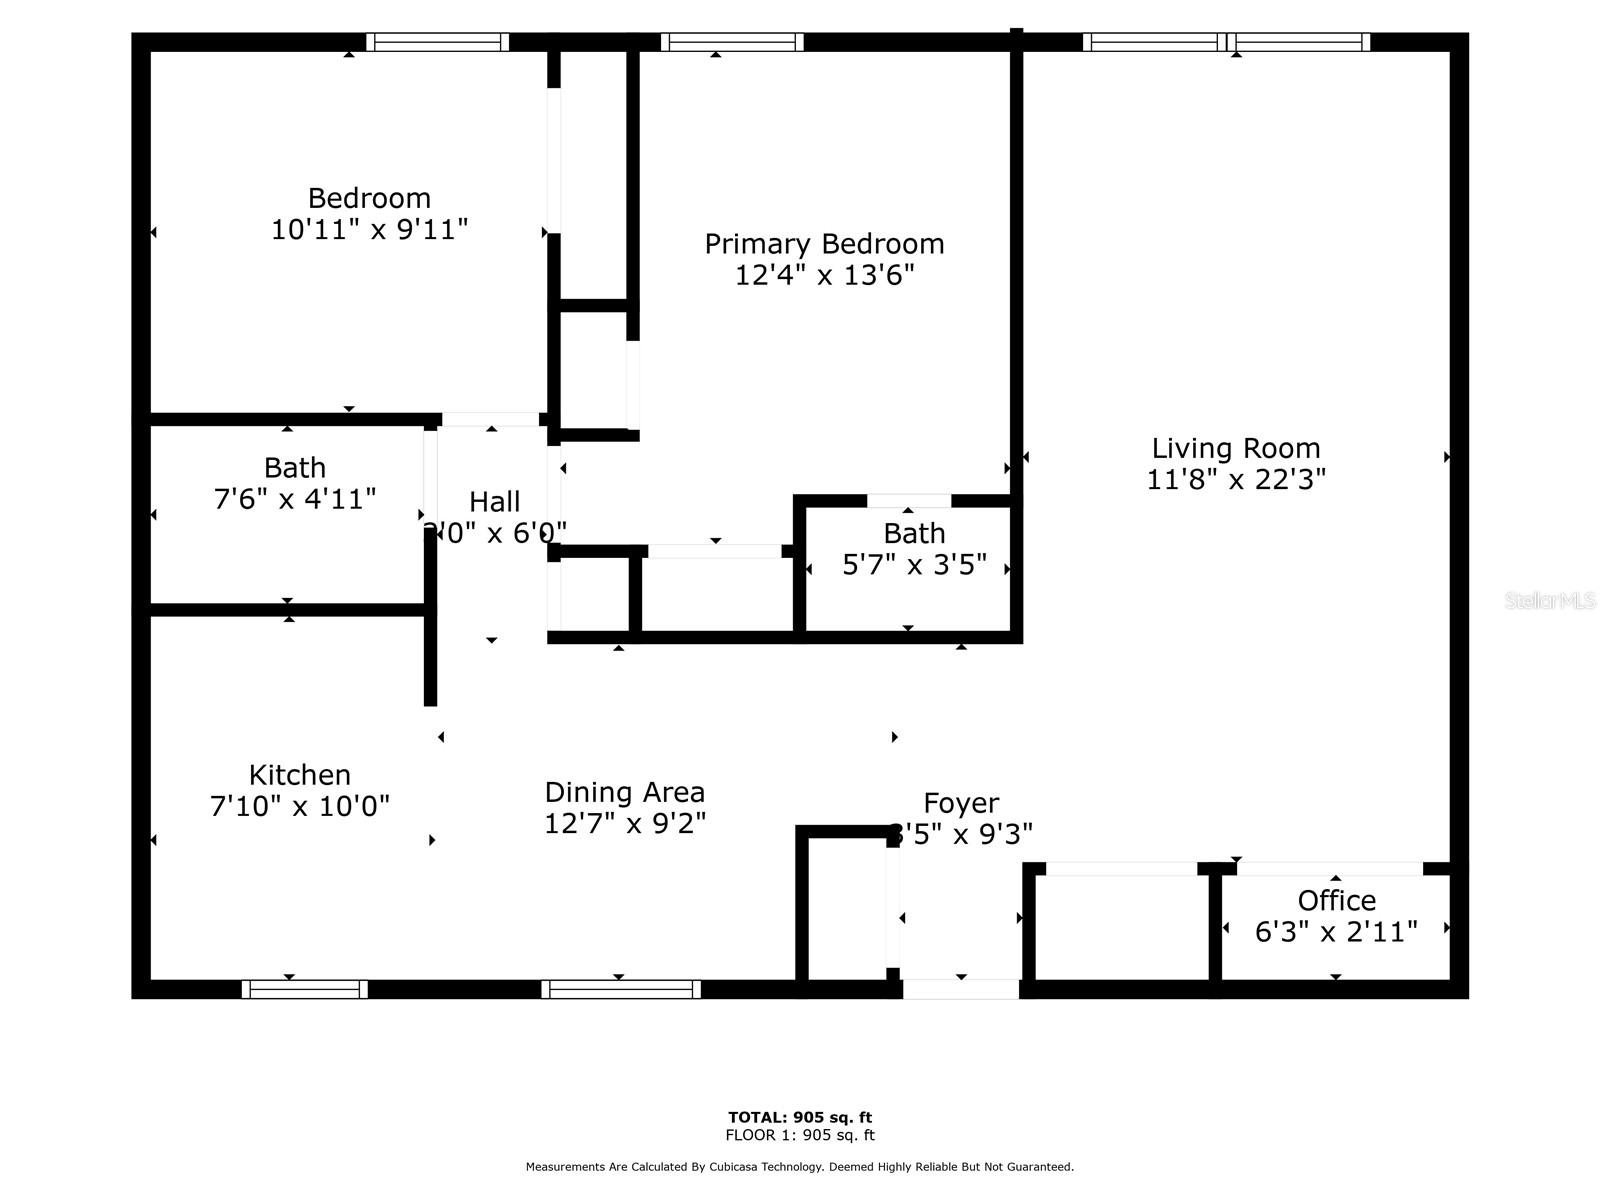 Floor plan measurements